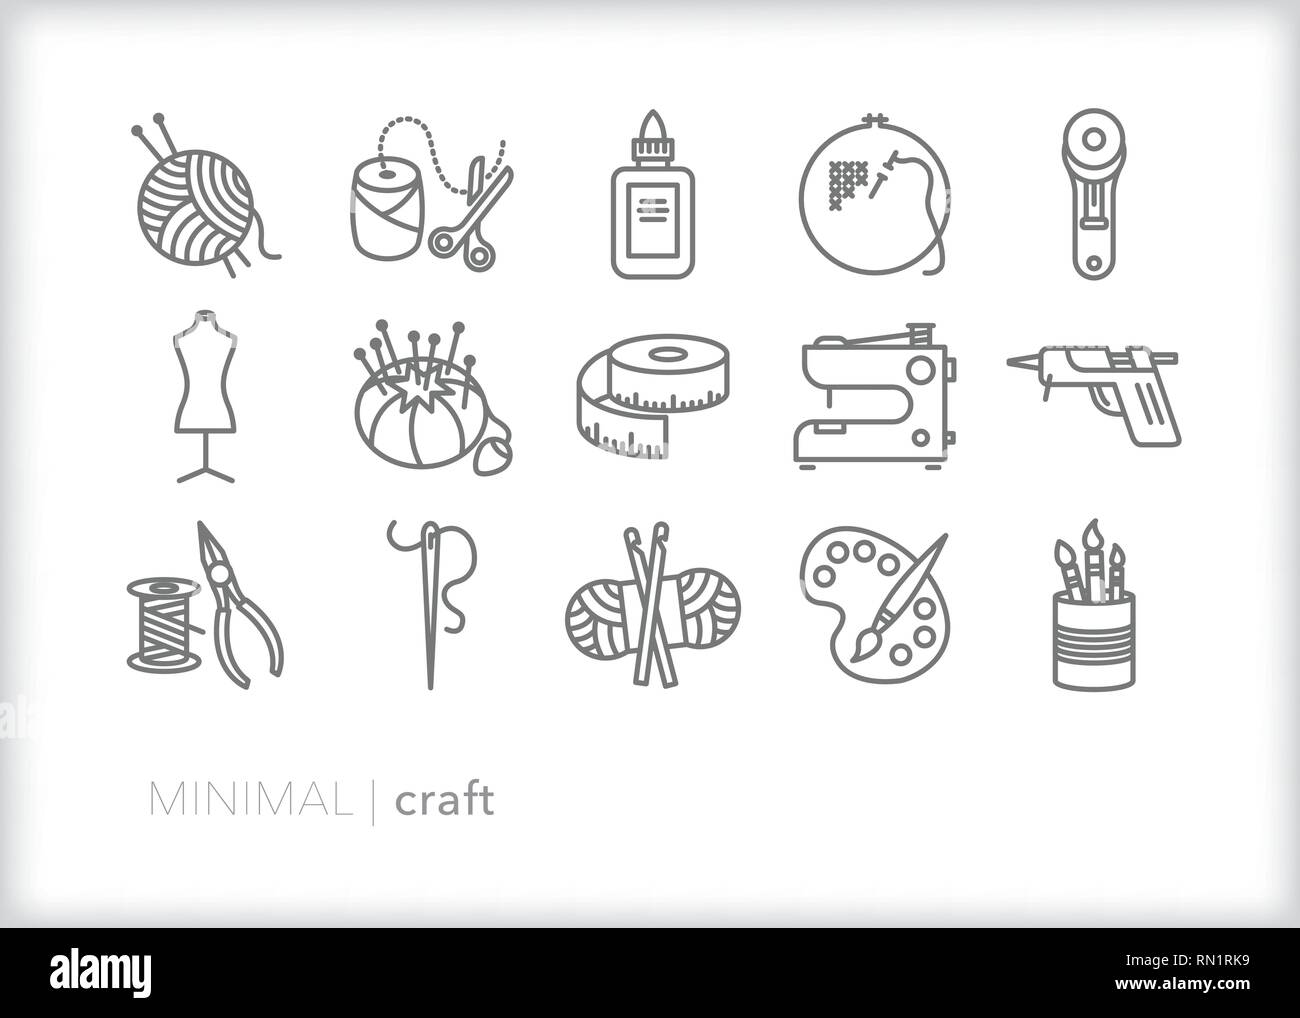 Satz von 15 grau Handwerk Zeile für Symbole von Objekten aus dem craft Hobbys wie Häkeln, Stricken, Malen, Nähen und DIY Projekte Stock Vektor